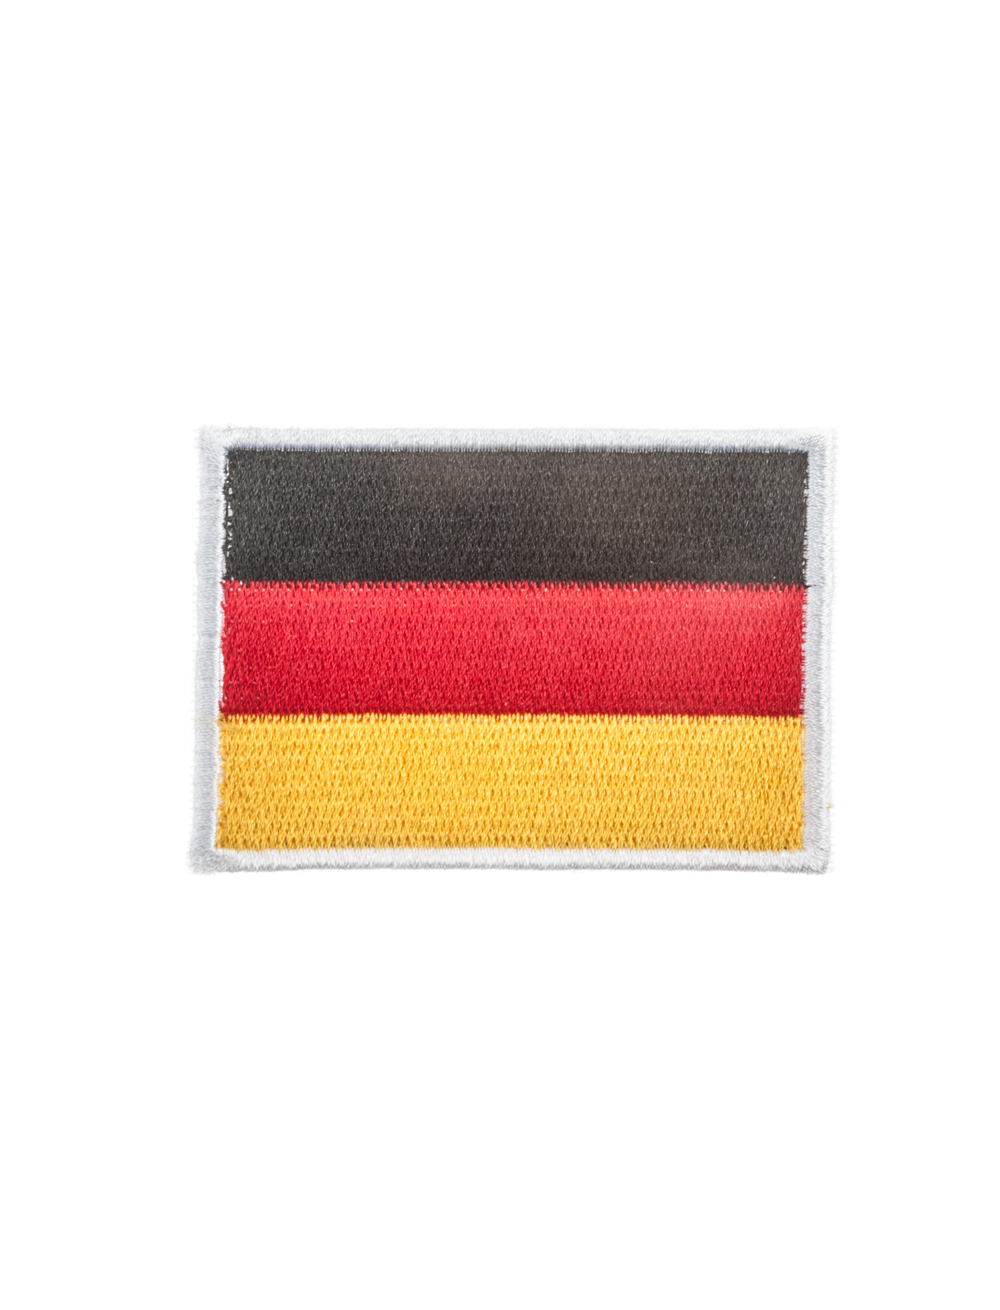 Aufnäher/Bügelbild Deutschland-Flagge 7x5cm